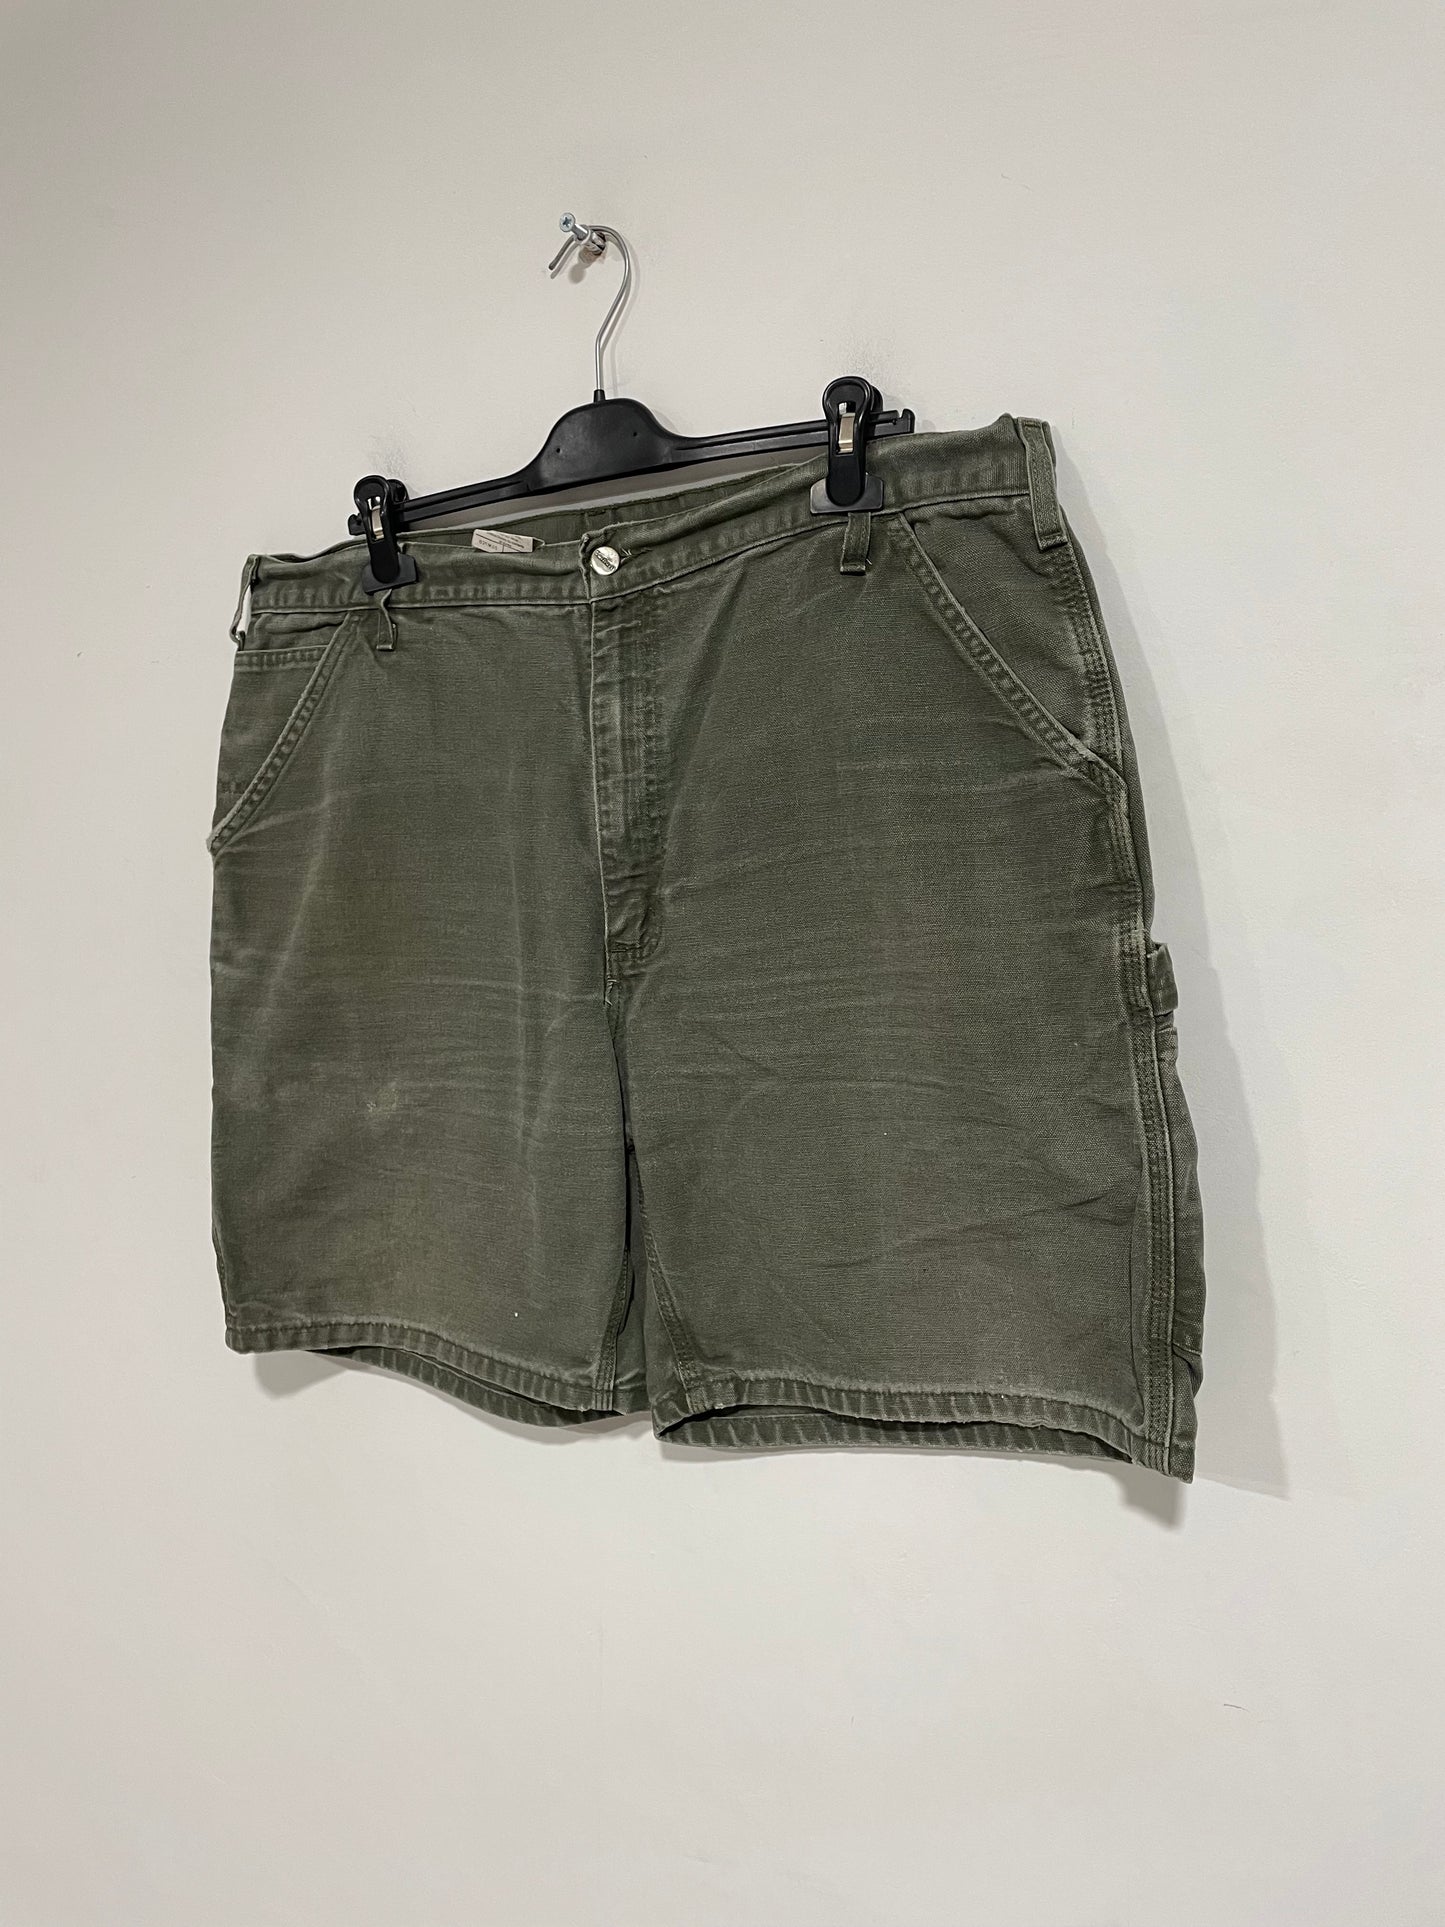 Shorts jeans Carhartt carpenter (D343)